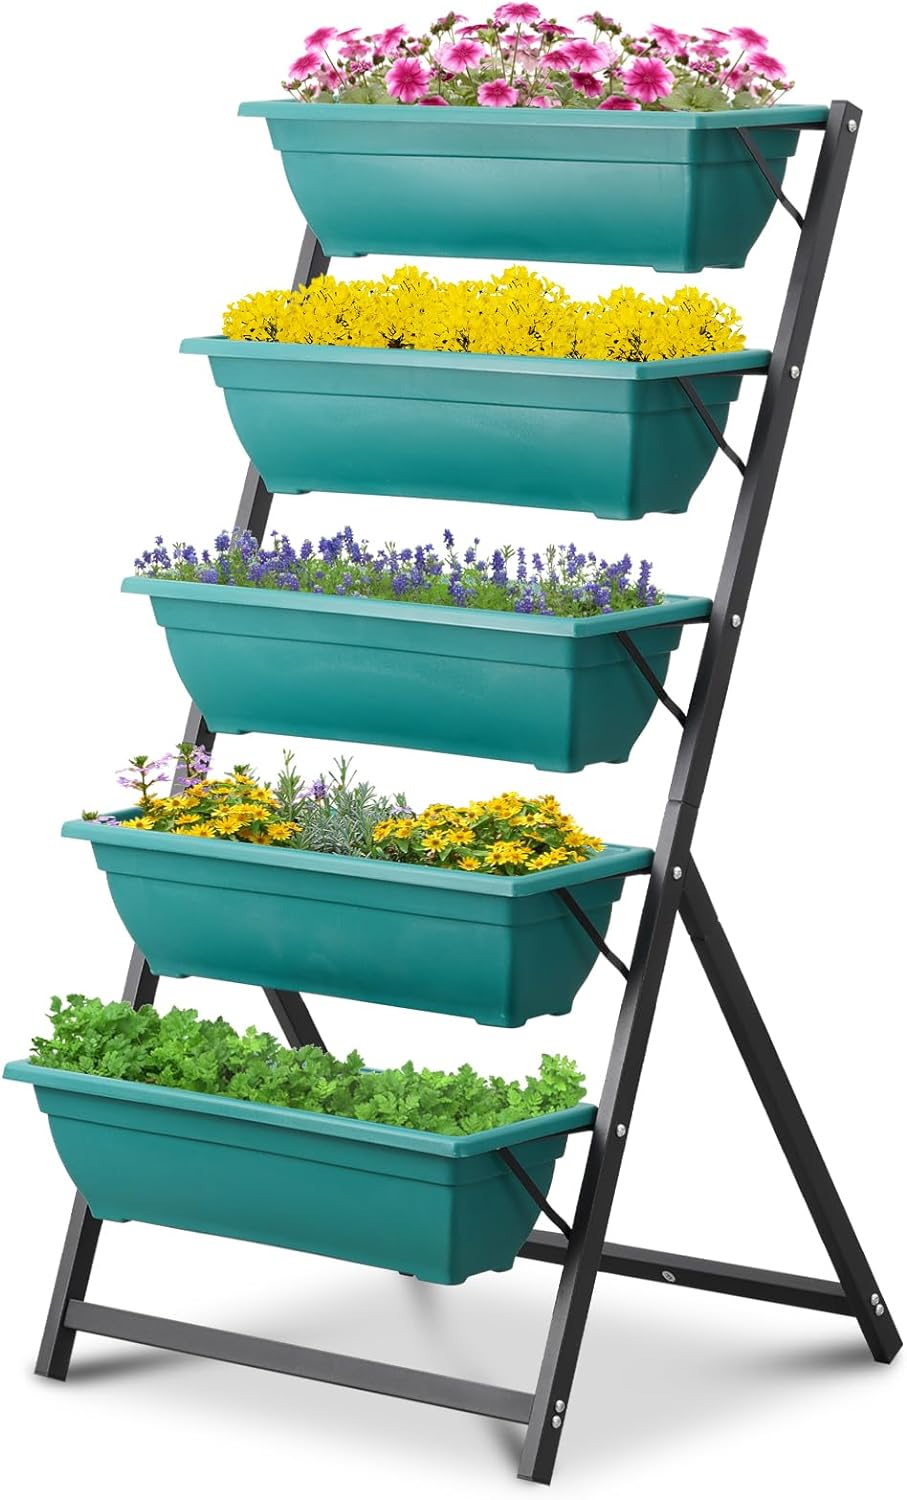 Ainfox 5-Tier Vertical Garden Bed with 5 Garden Planter Boxes (Green) $45 + Free Shipping